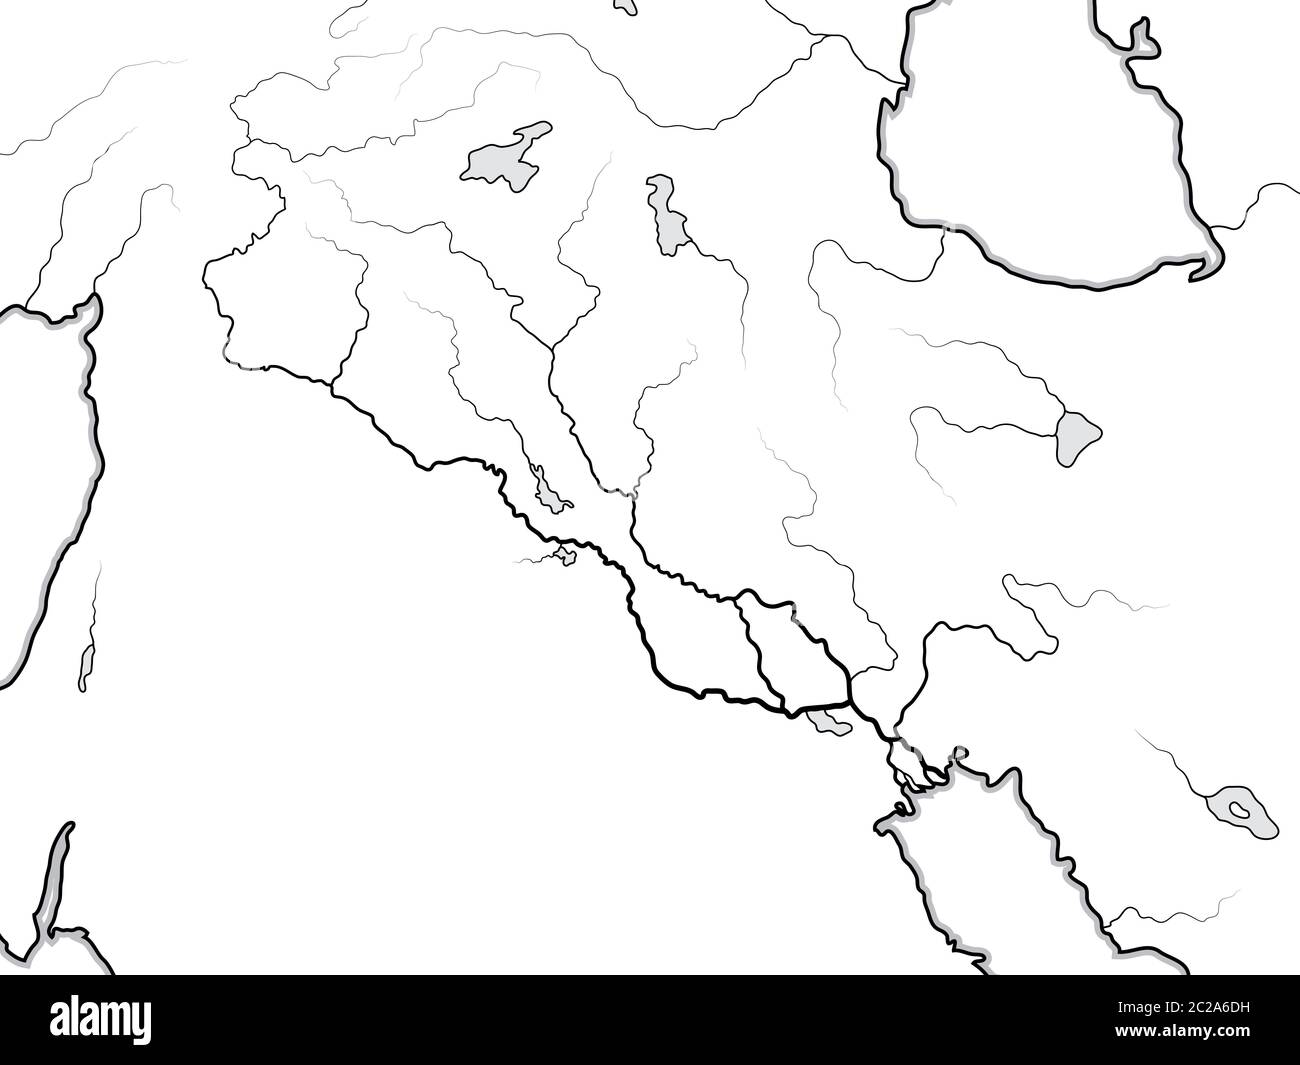 Carte du monde de la vallée DU TIGRE et DE L'EUPHRATE : Irak, Syrie, Arménie, Levant, Moyen-Orient, Golfe persique. Carte géographique. Banque D'Images